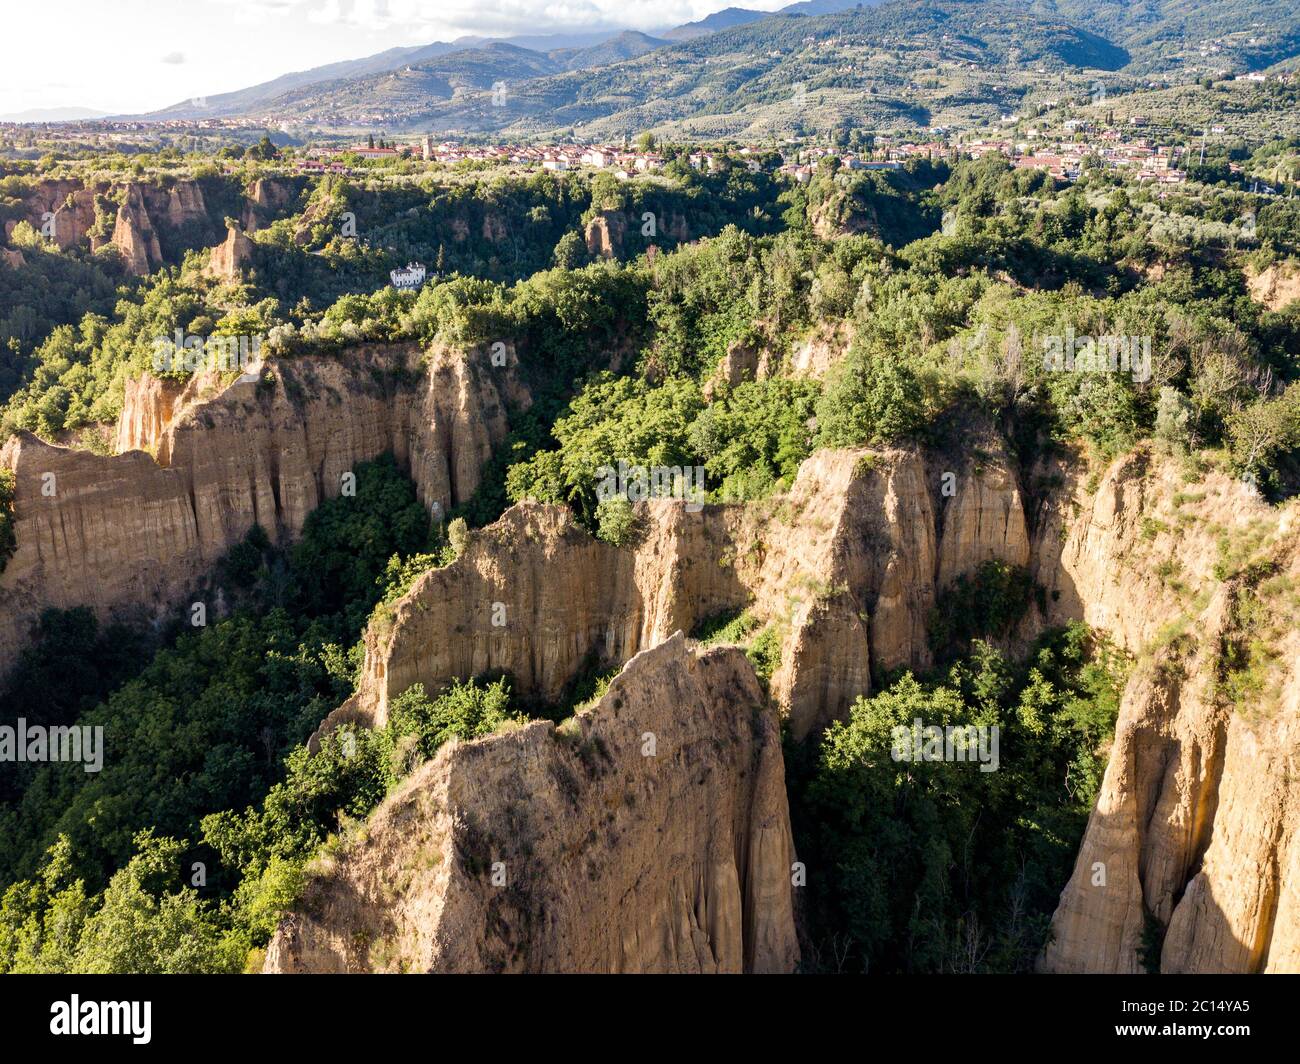 Balze Valdarno, canyon in Tuscany, Italy. Stock Photo